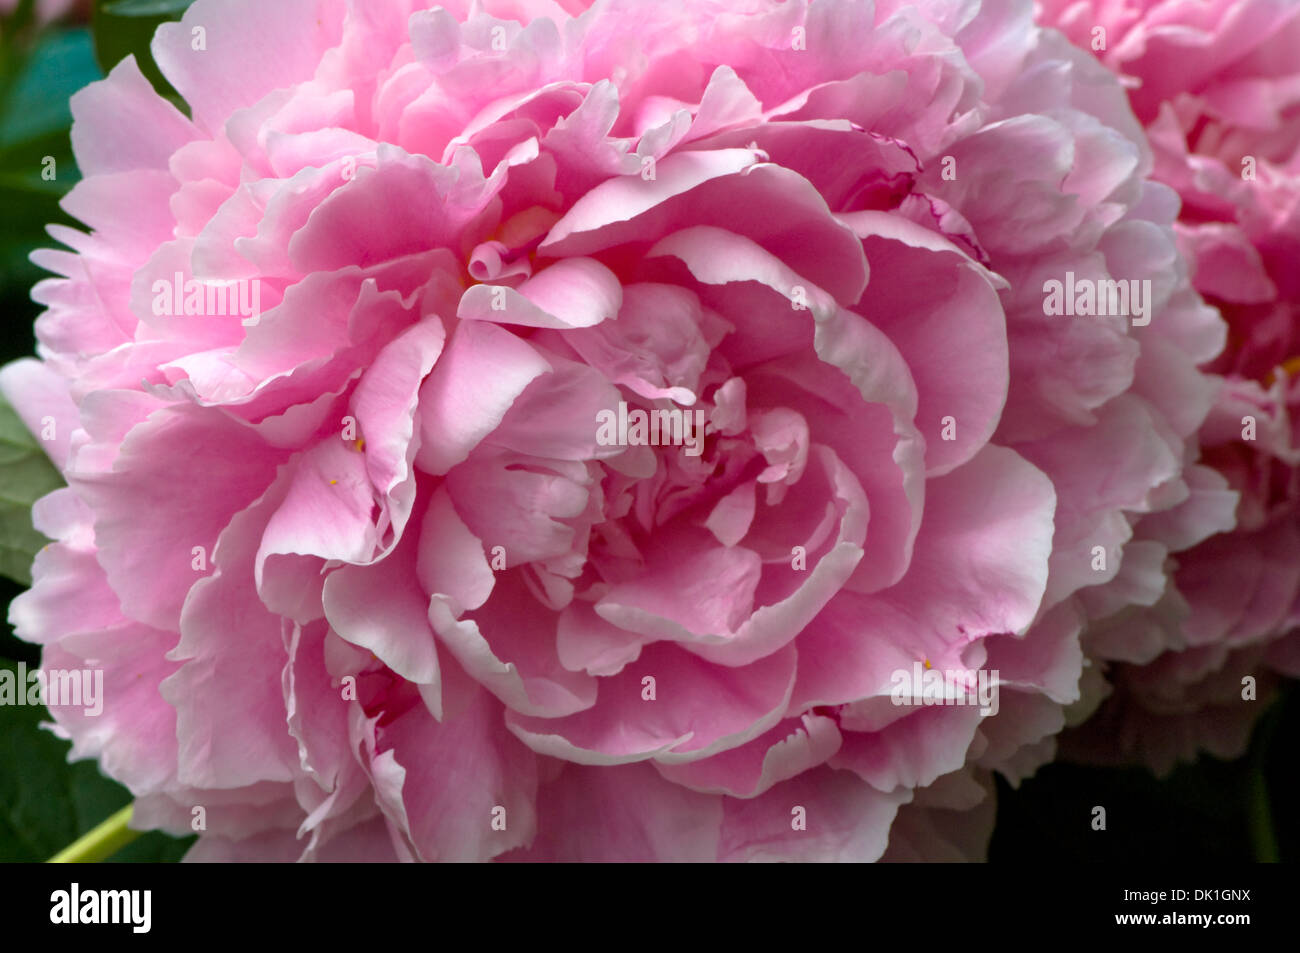 Rosa-weiße Pfingstrose Blume, Makro Nahaufnahme. Stockfoto